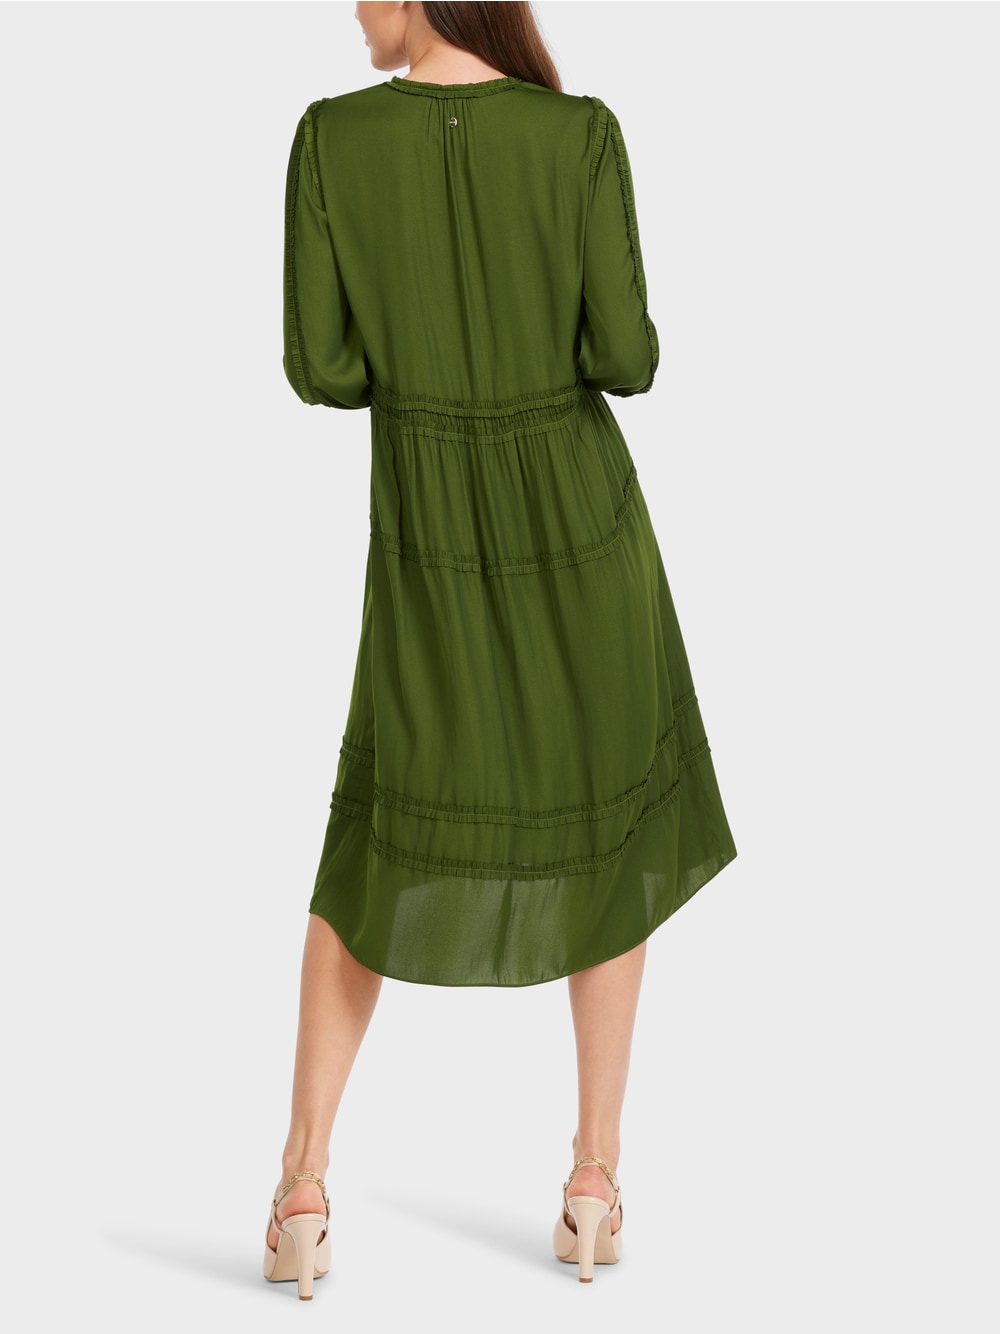 orient green dress